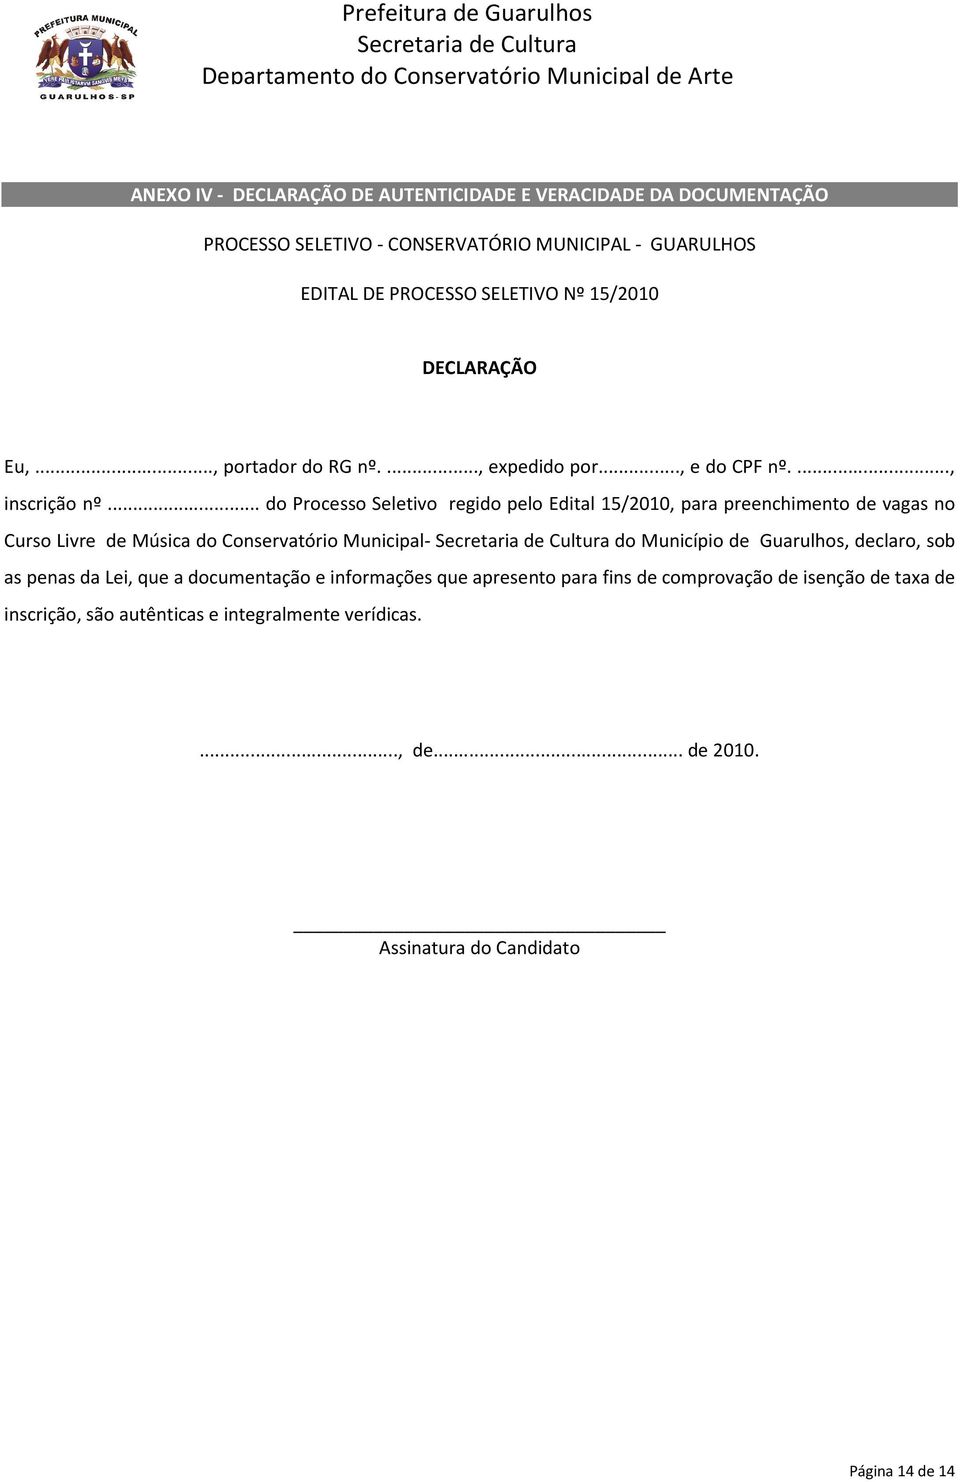 .. do Processo Seletivo regido pelo Edital 15/2010, para preenchimento de vagas no Curso Livre de Música do Conservatório Municipal- do Município de Guarulhos,